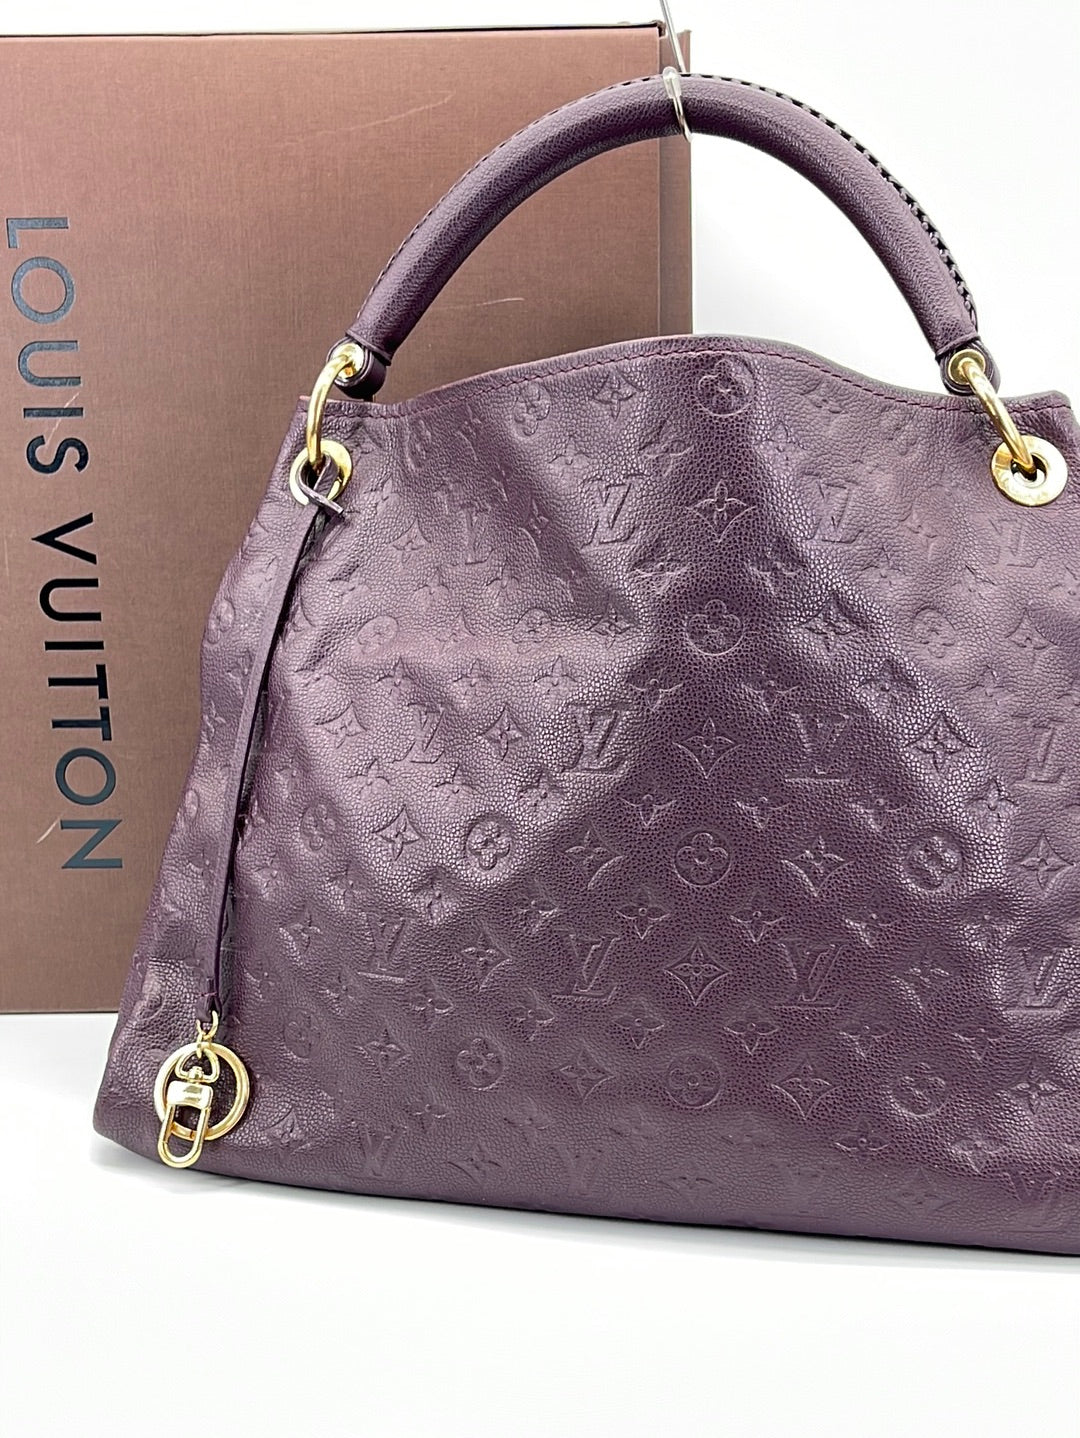 At Auction: Louis Vuitton, Louis Vuitton Artsy MM Handbag